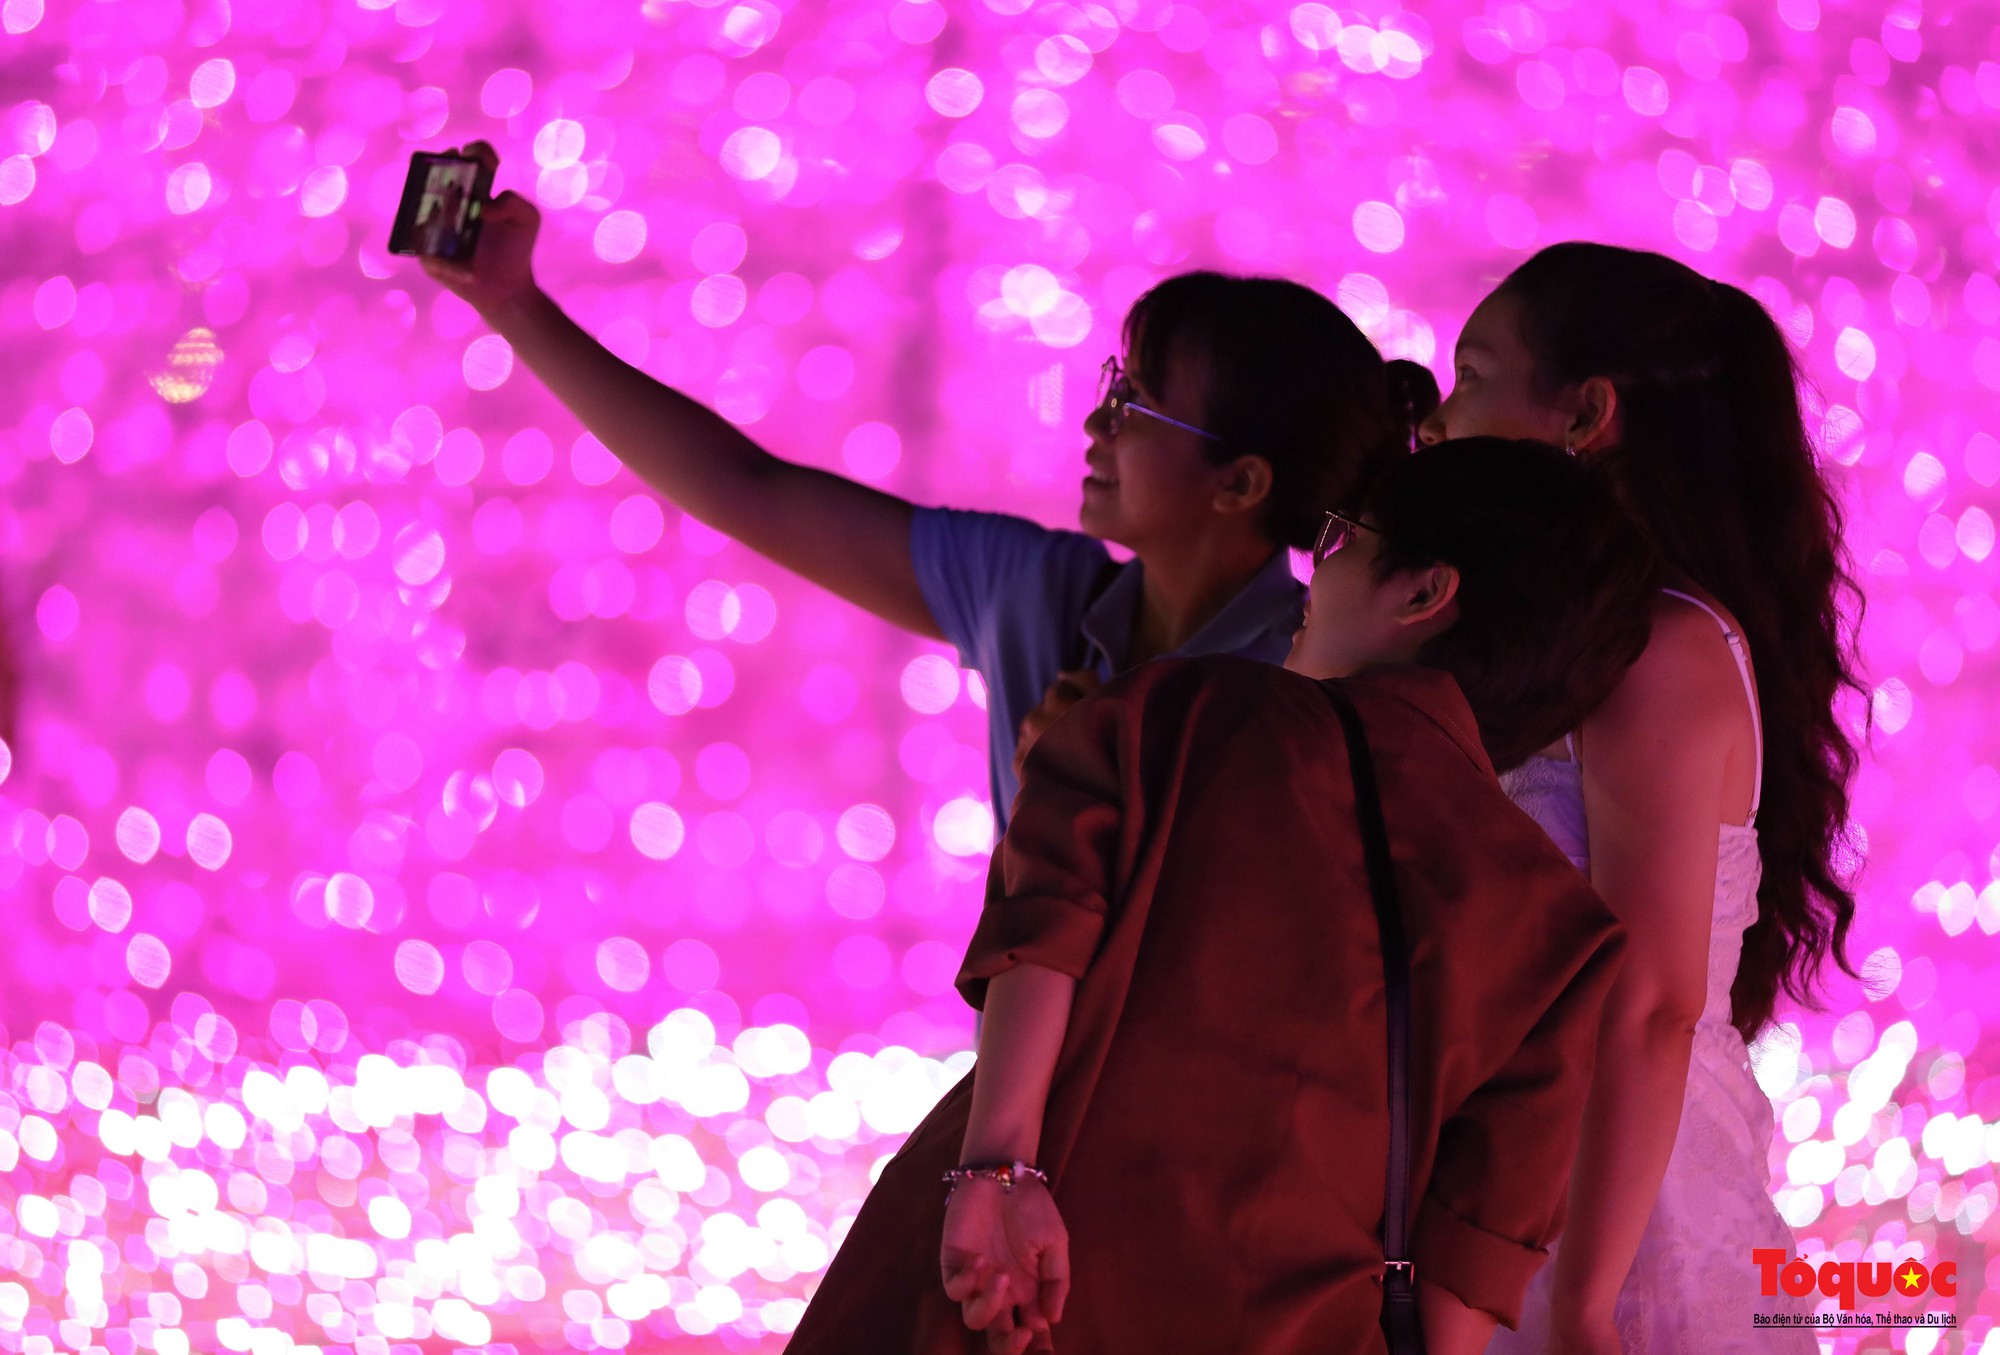 Người dân và du khách thích thú “check-in” không gian ánh sáng nghệ thuật bên sông Hàn  - Ảnh 12.